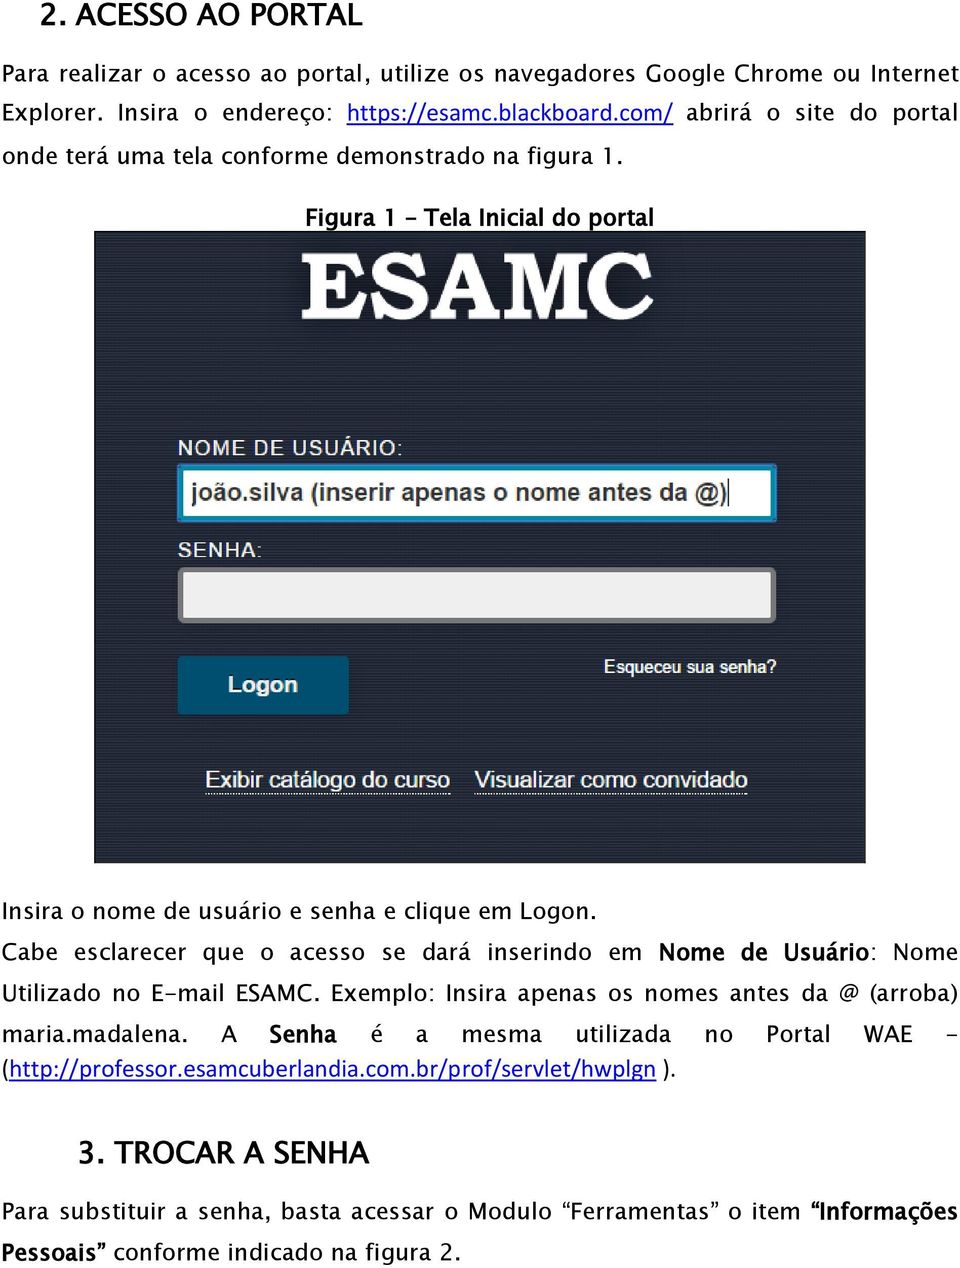 Cabe esclarecer que o acesso se dará inserindo em Nome de Usuário: Nome Utilizado no E-mail ESAMC. Exemplo: Insira apenas os nomes antes da @ (arroba) maria.madalena.